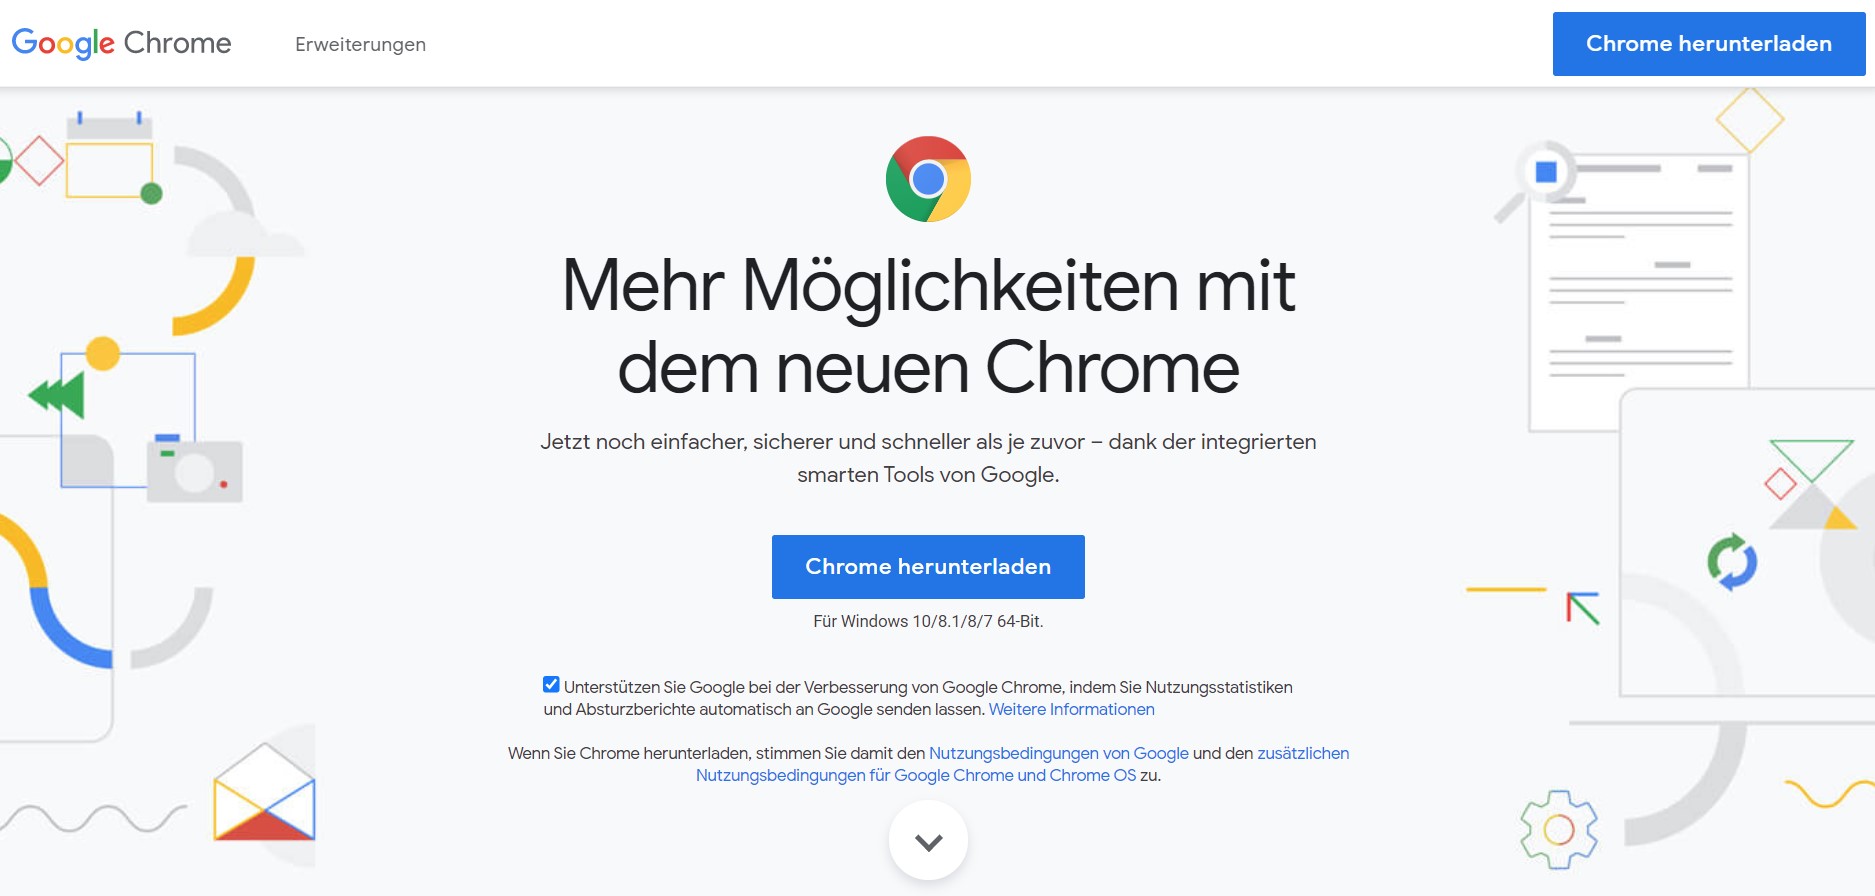 Zu sehen ist ein Screenshot der Produktseite von Google Chrome. Es geht um die Frage: Welcher Browser ist der sicherste? Bild: Screenshot